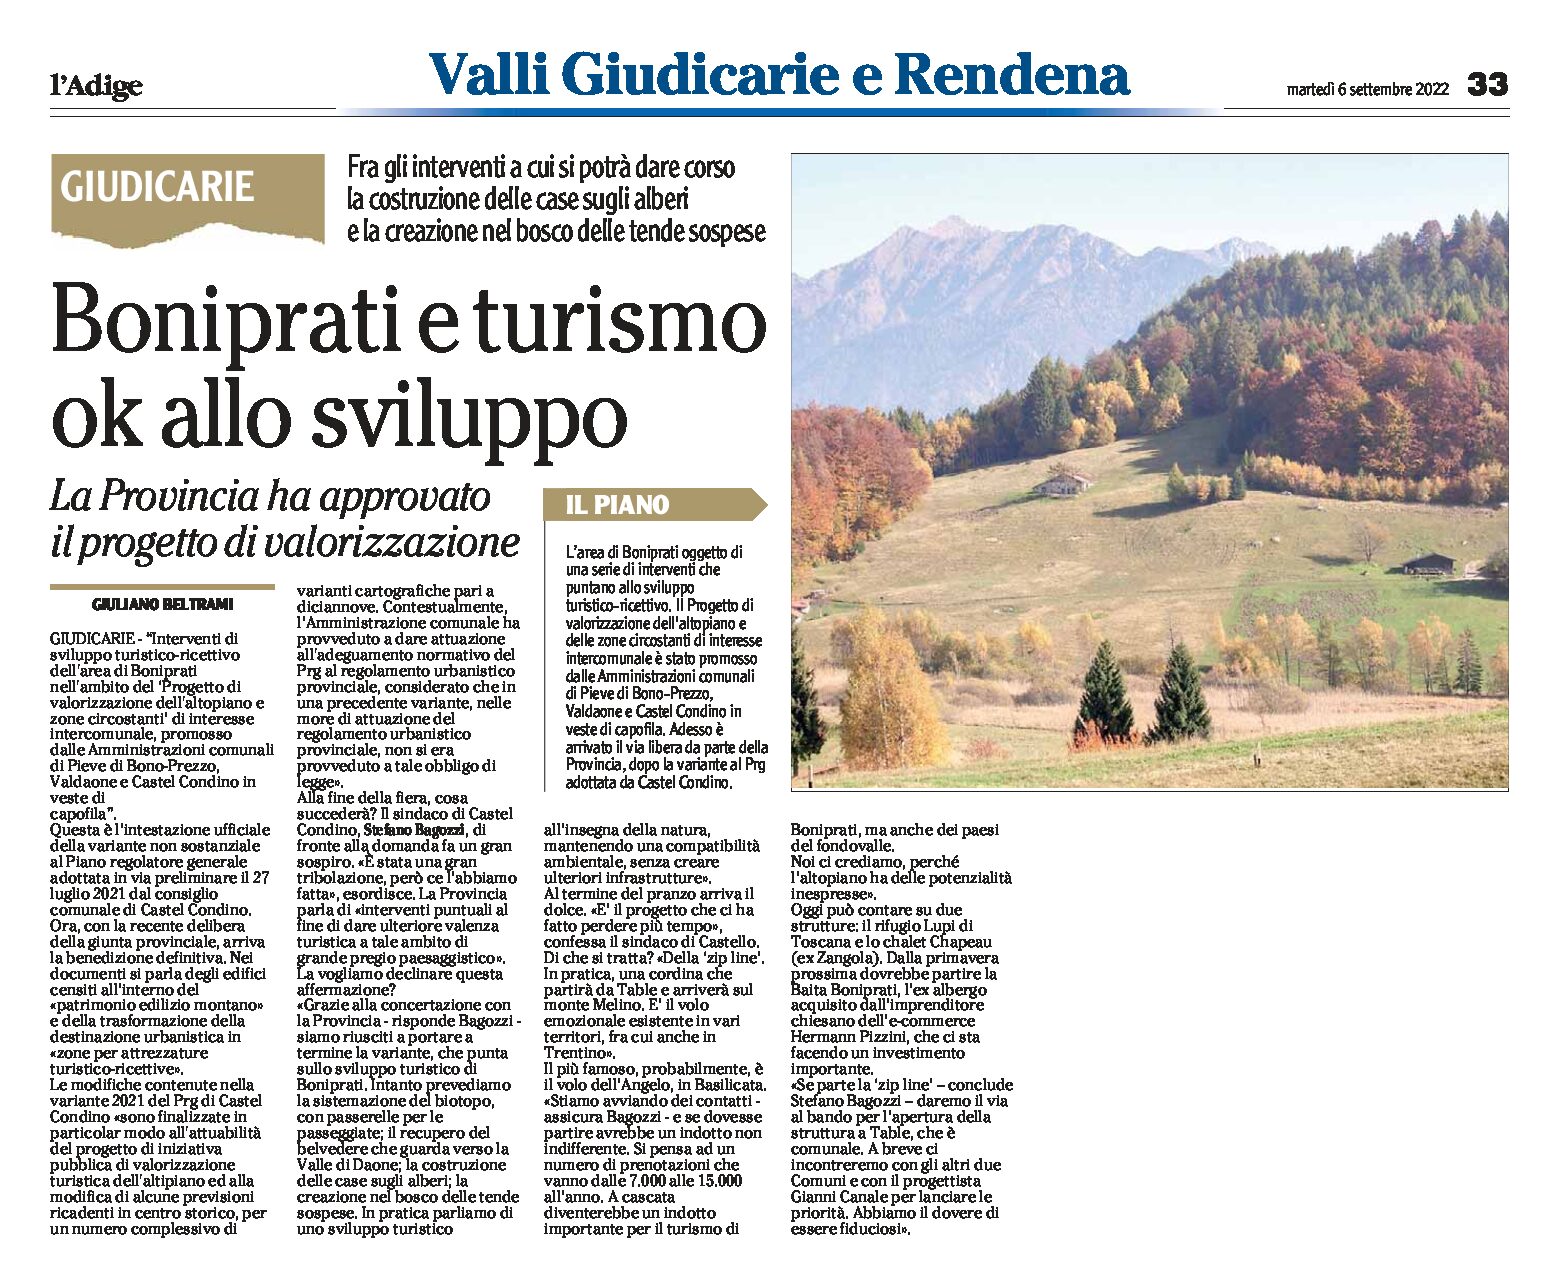 Giudicarie: area Boniprati e turismo, la Provincia ha approvato il progetto di valorizzazione